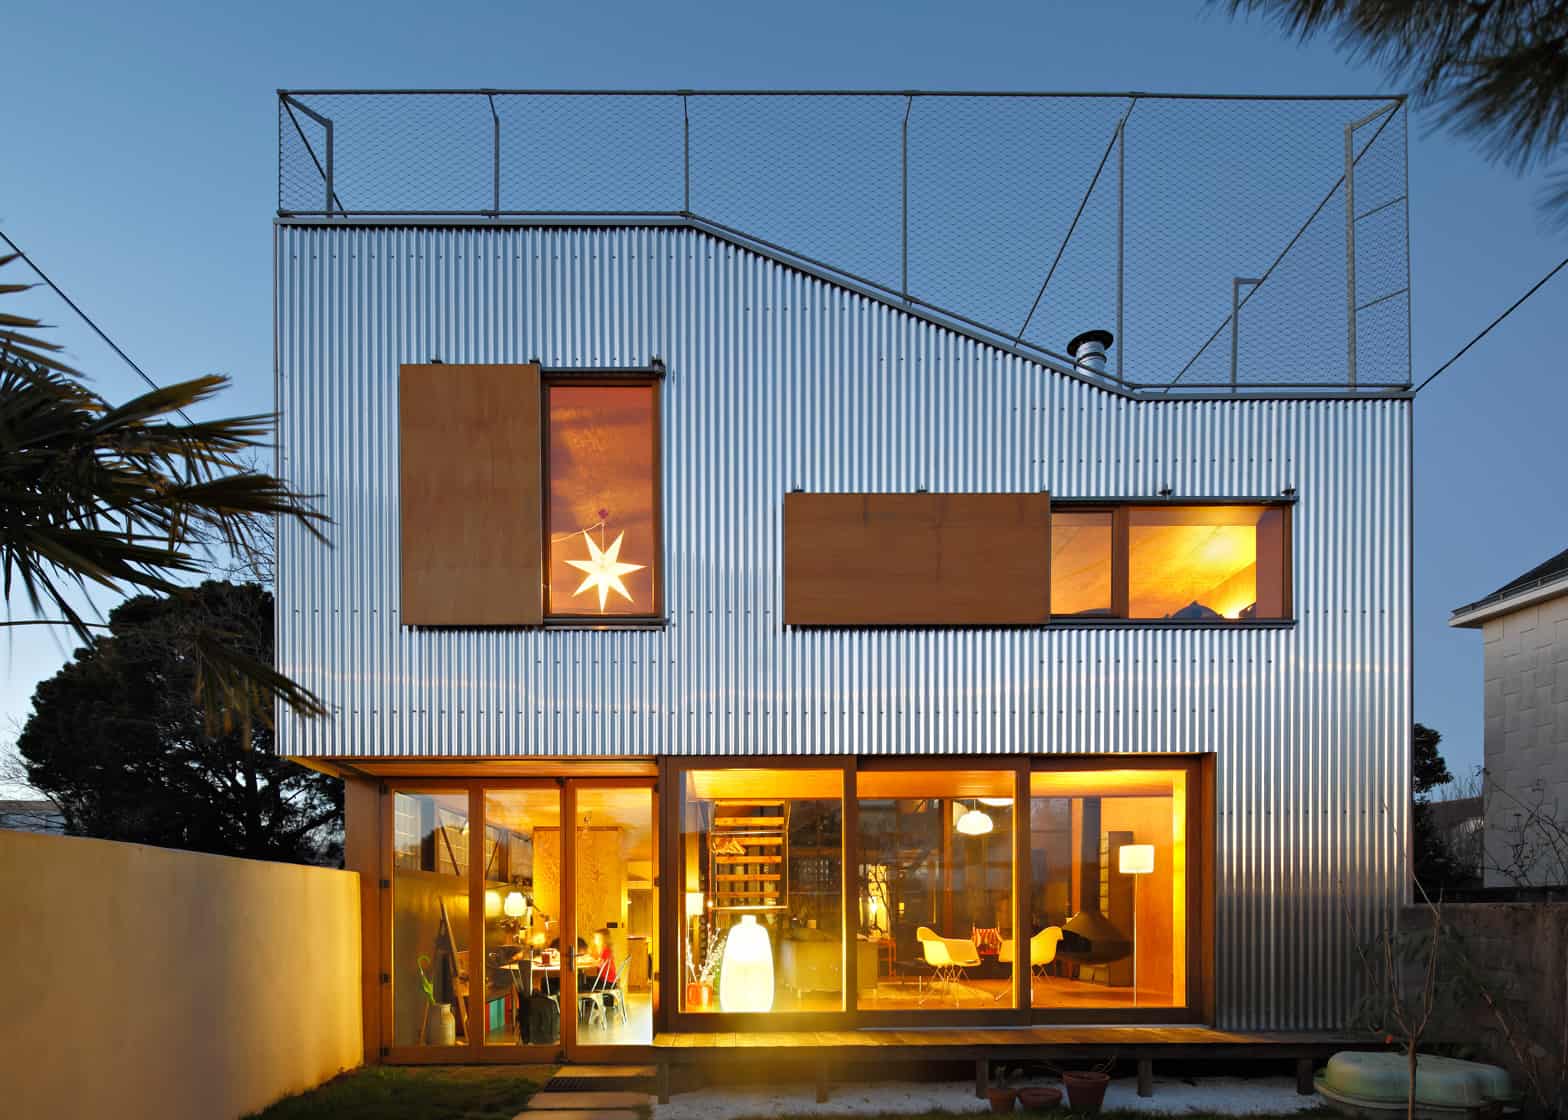 1 corrugated aluminium facade 1930s home extension